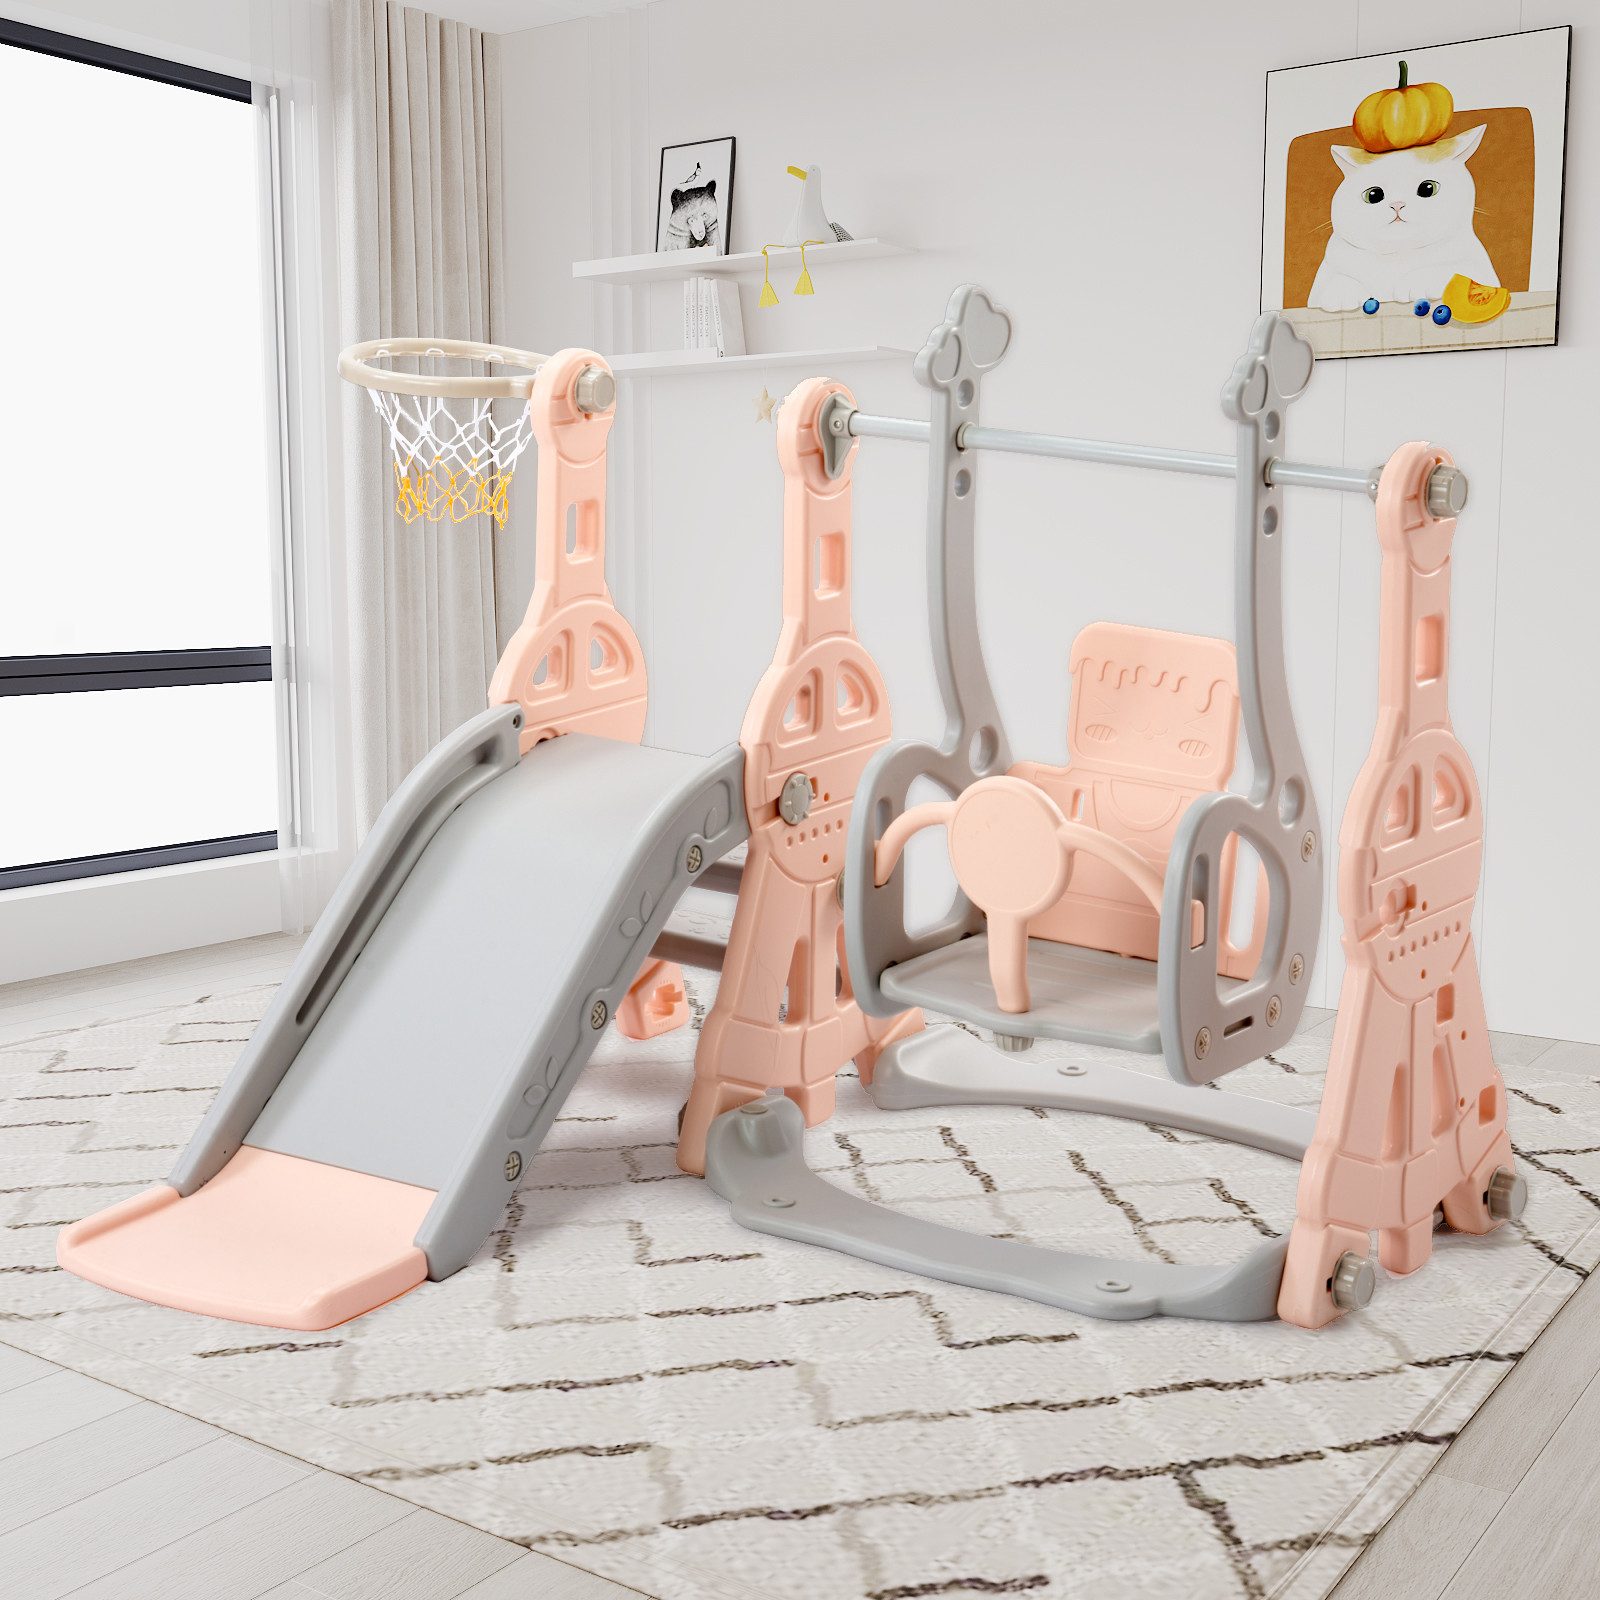 SEEZSSA Rutsche 4-in-1 Kinder Fun-Slide mit Basketballkorb,Kinderrutsche,Gartenrutsche, Kleinkinderrutsche für 1-3 Jahre, Indoor & Outdoor Rutschbahn Rosa